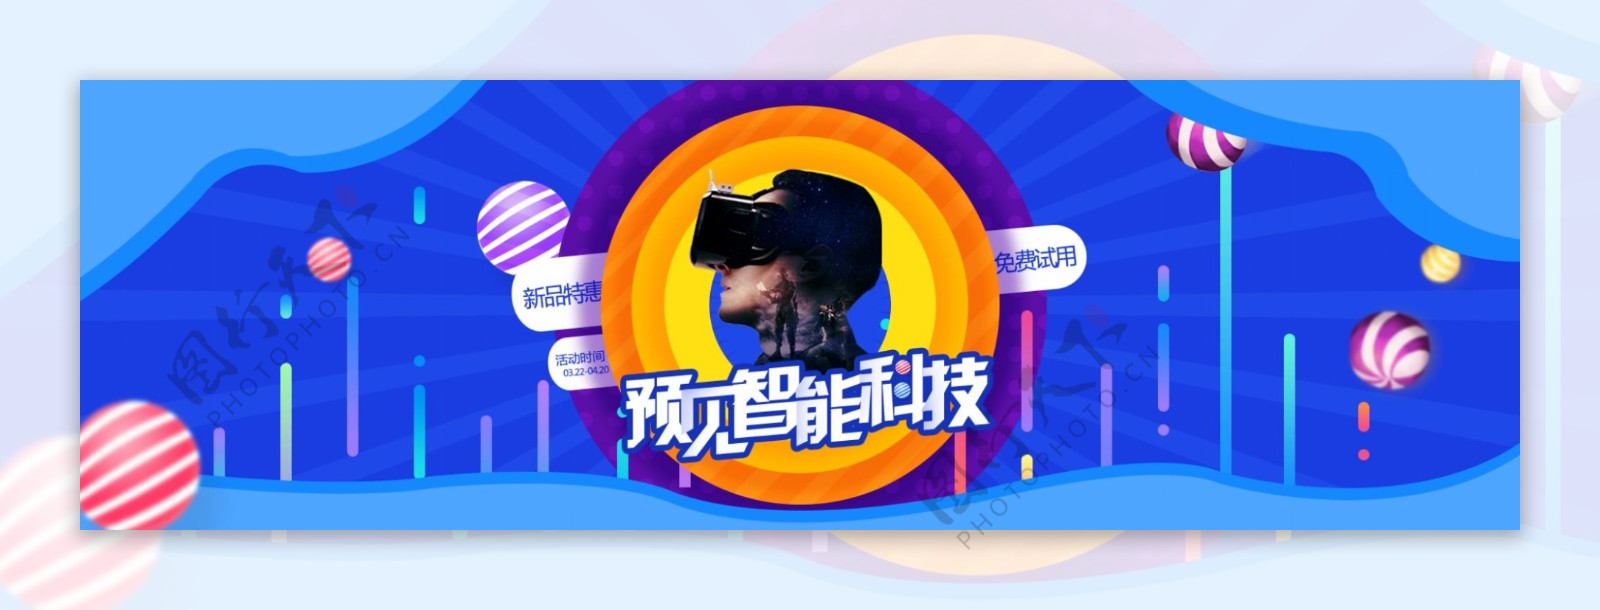 蓝色扁平化2.5D渐变VR视觉手机海报